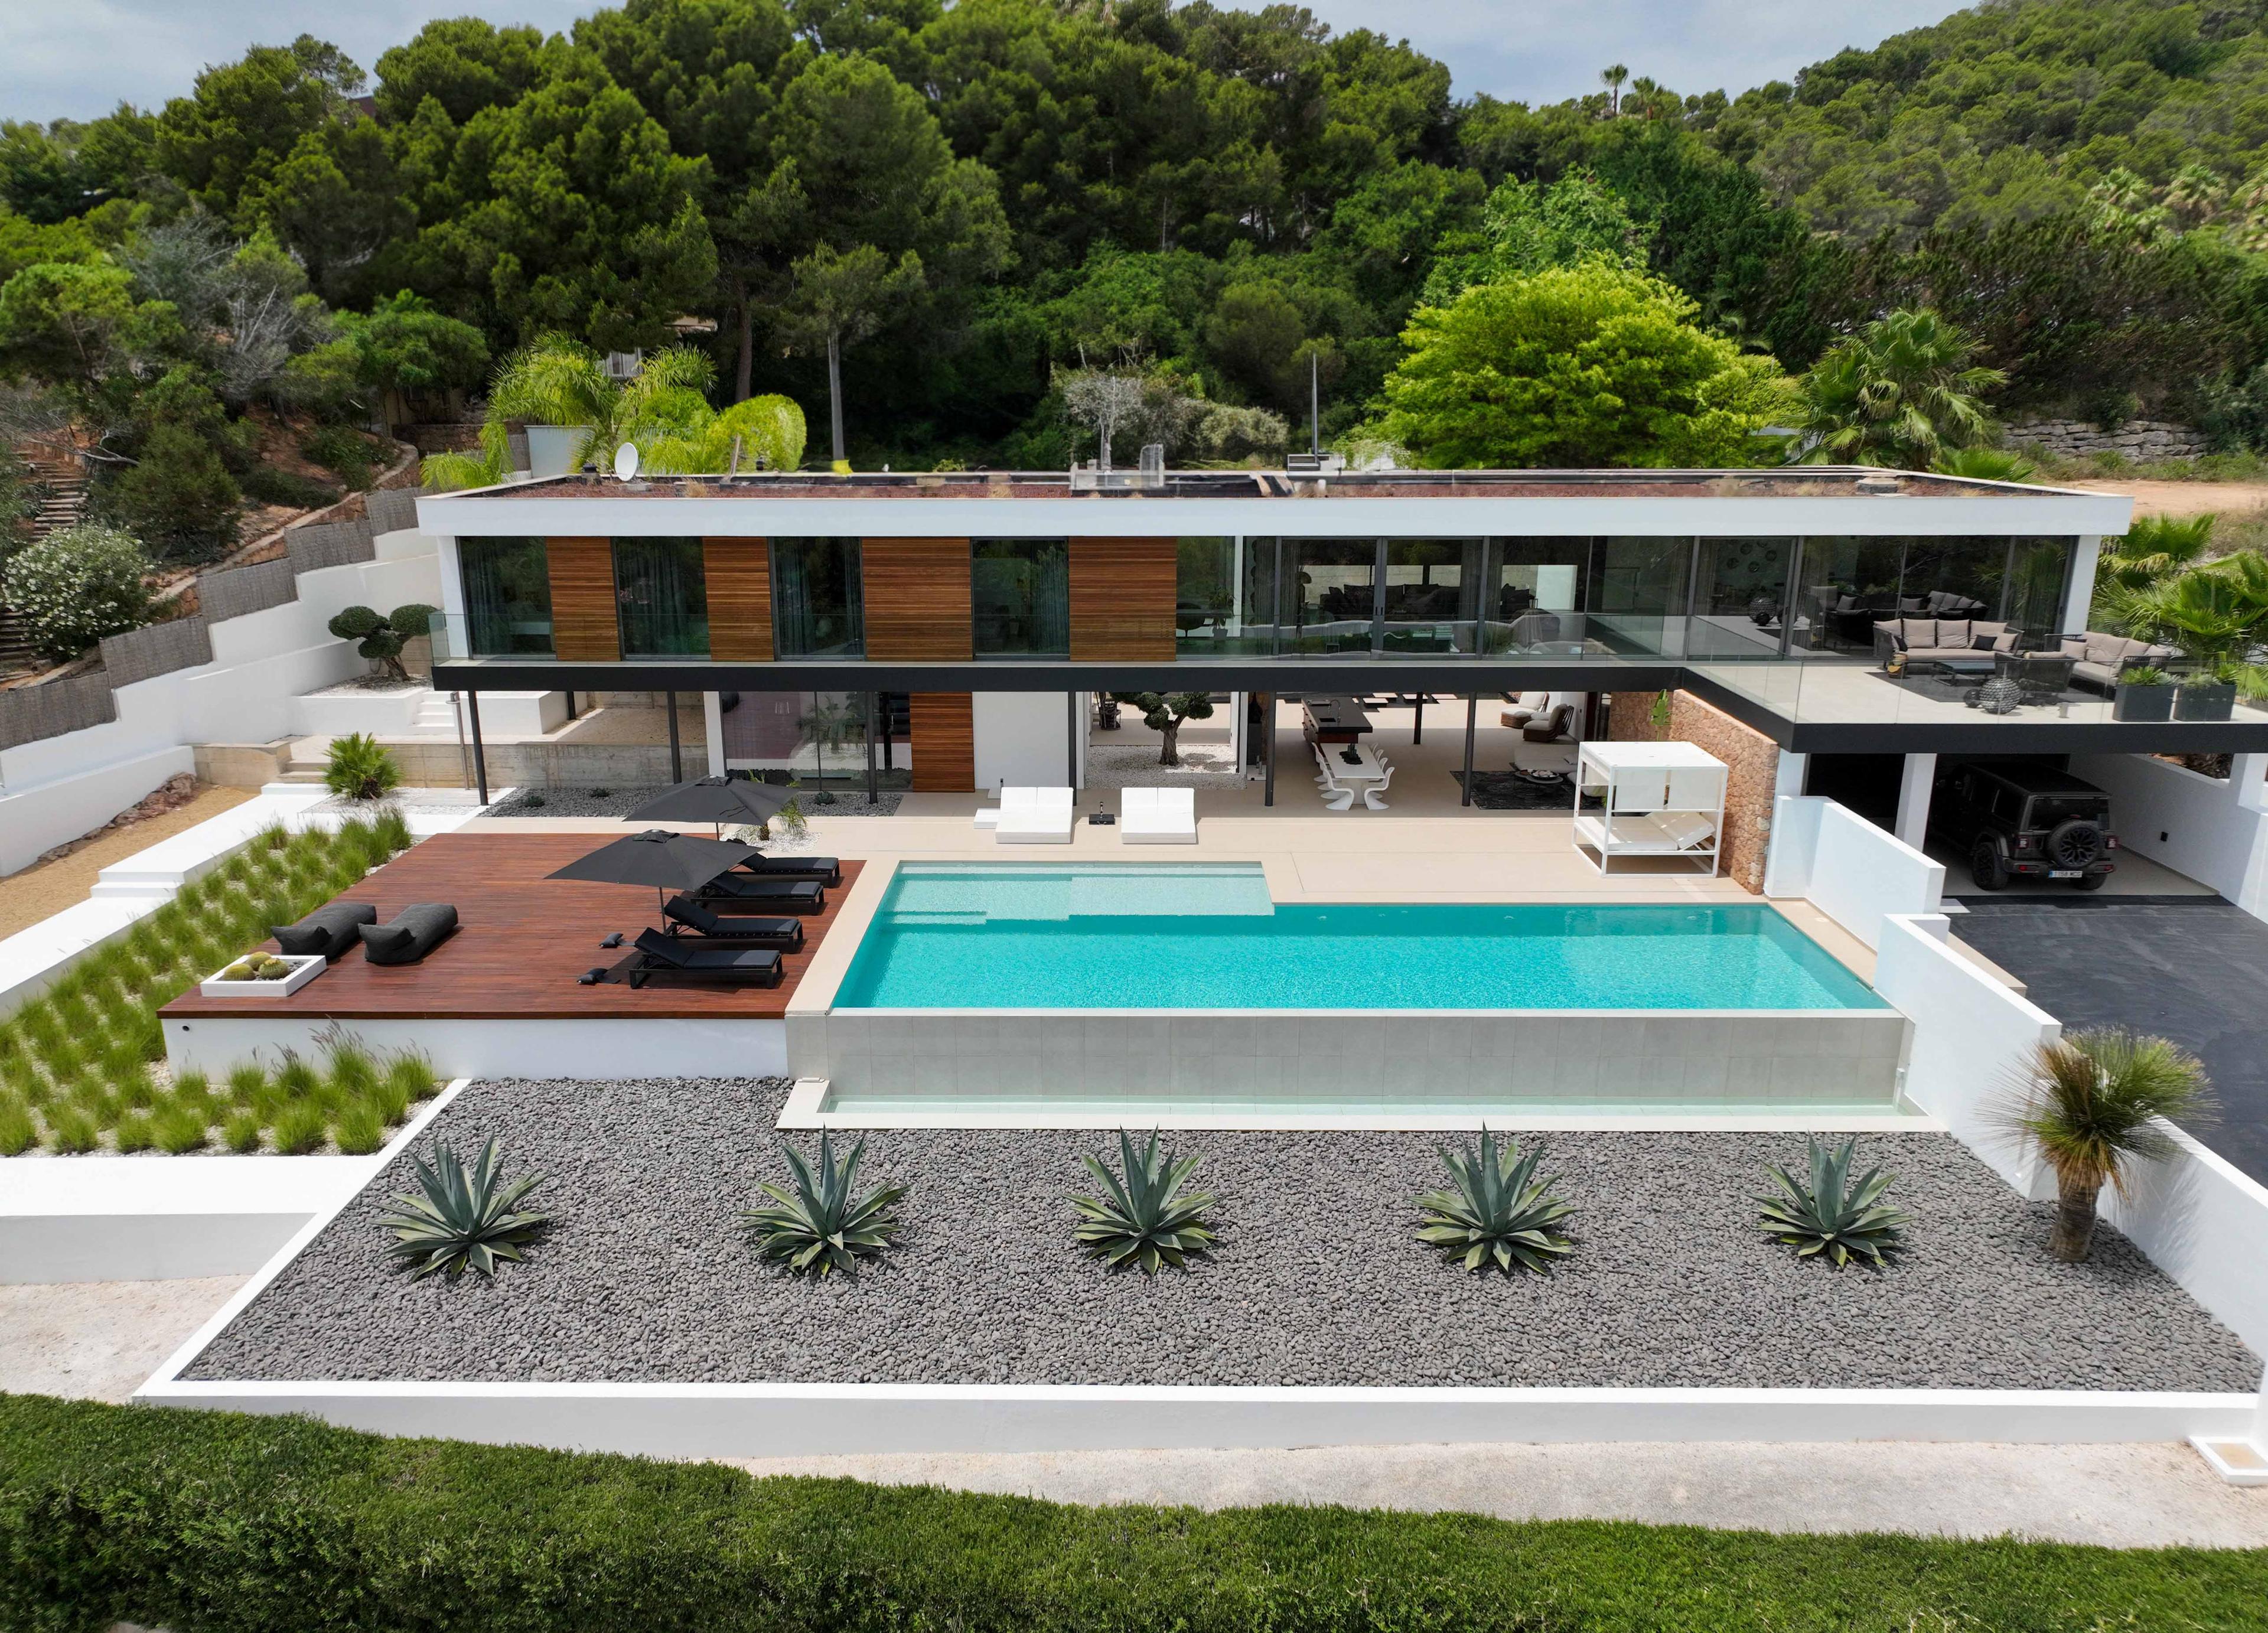 Image: The Top 5 Luxury Sea View Villas in Ibiza